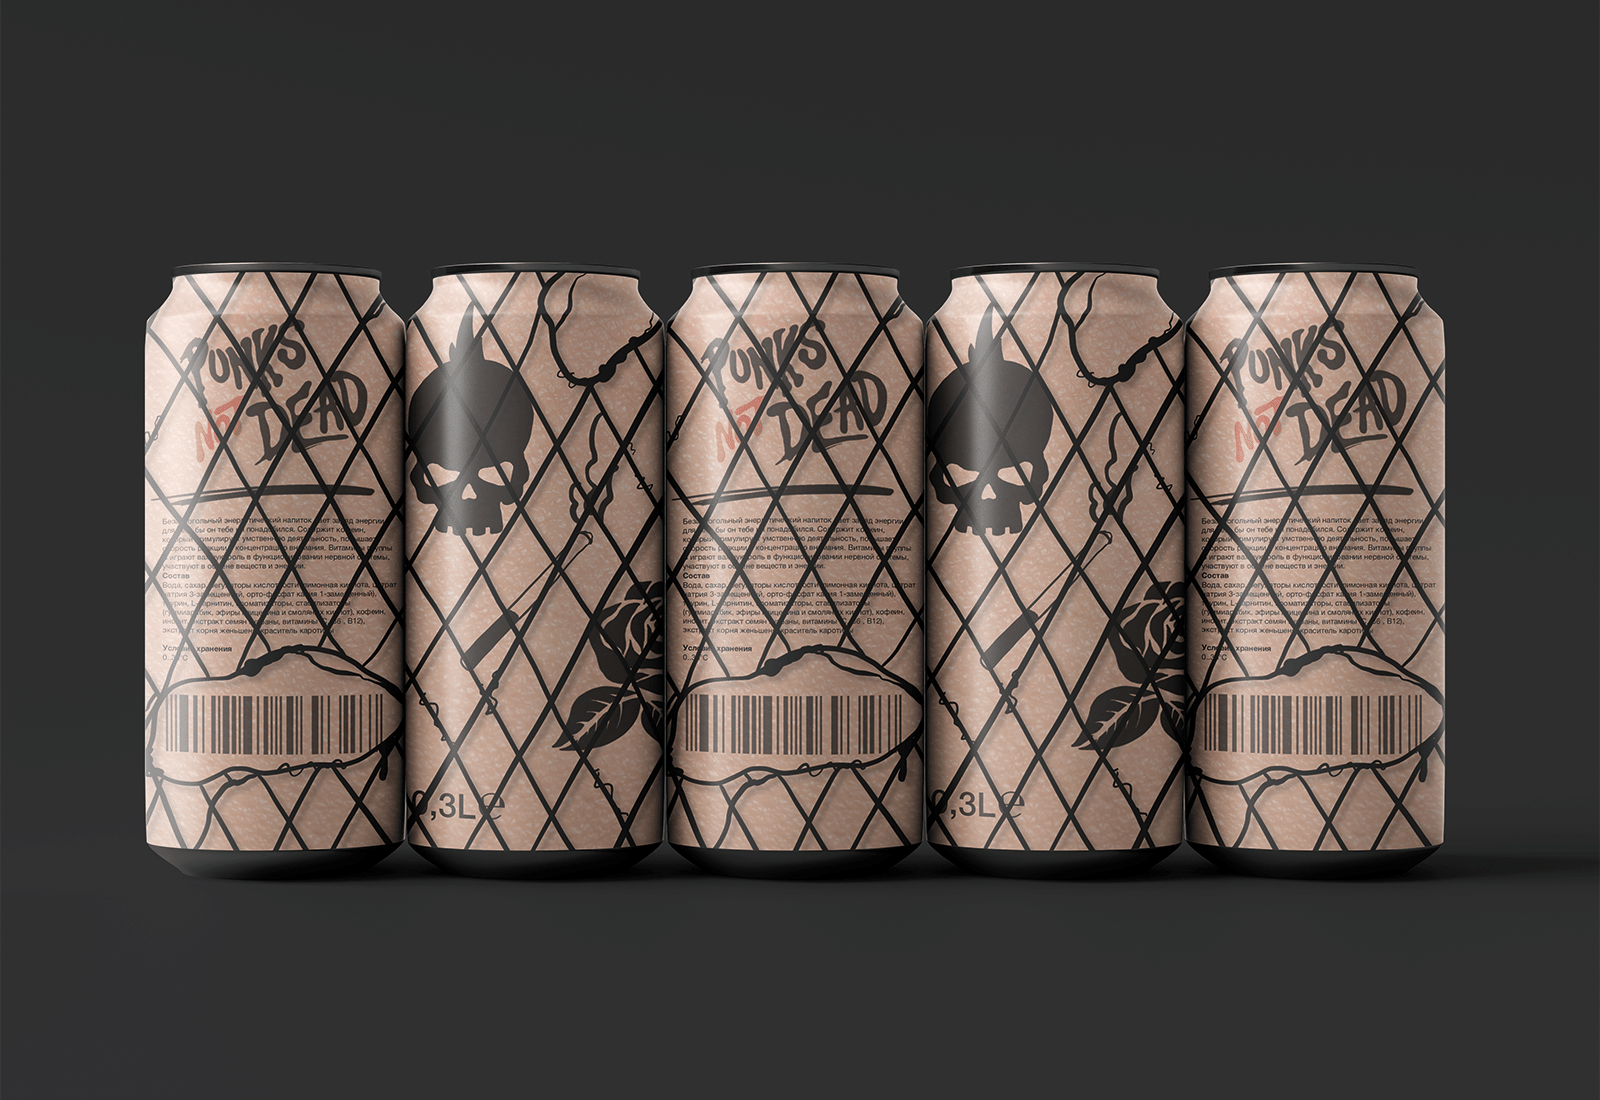 网格涂鸦风格罐装能量饮料包装设计